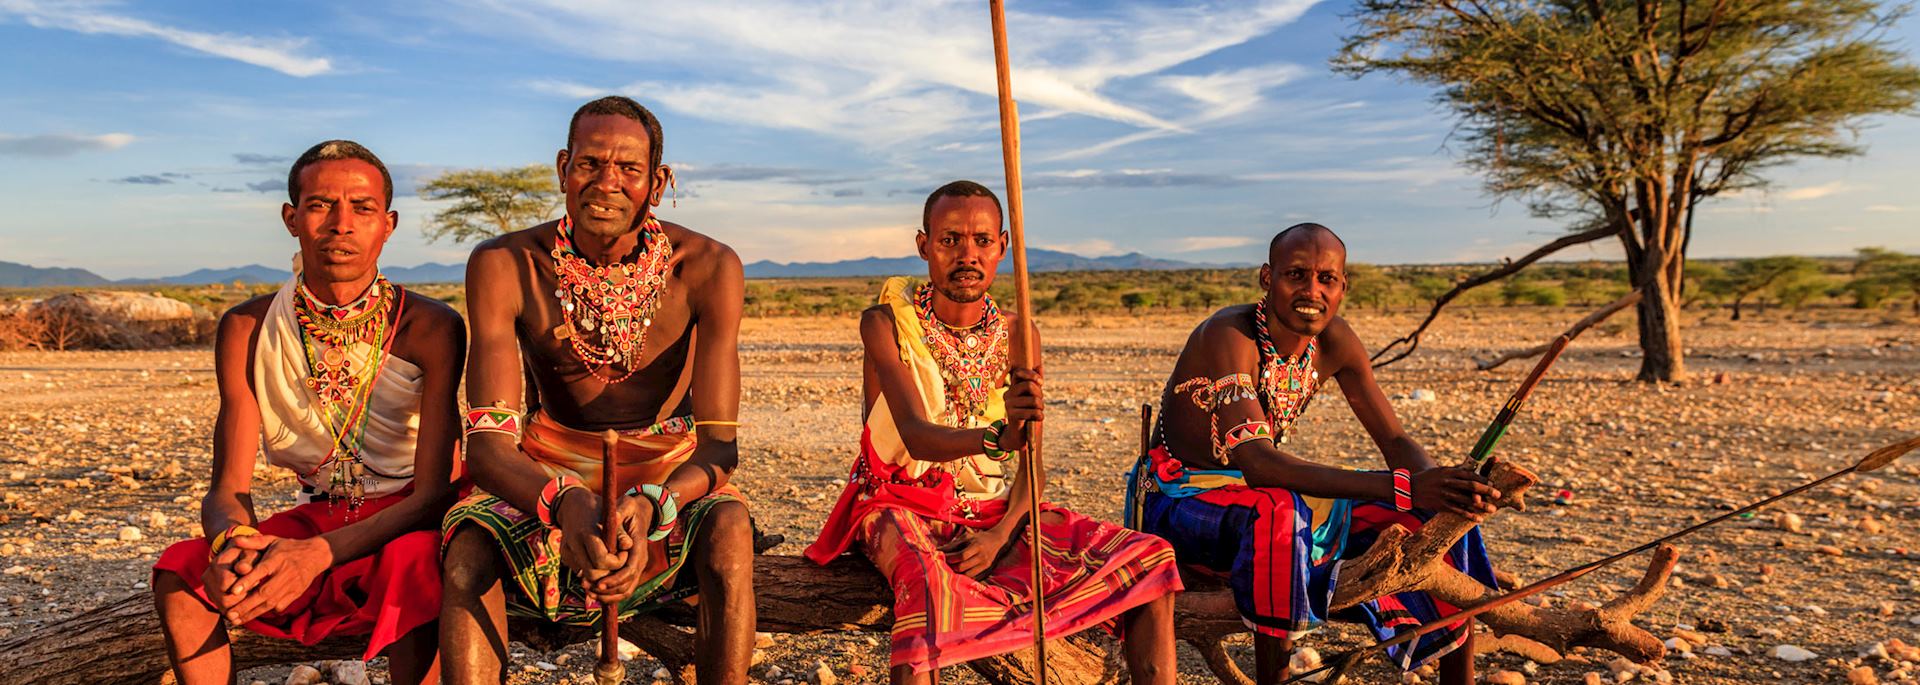 Samburu tribe, Samburu National Reserve